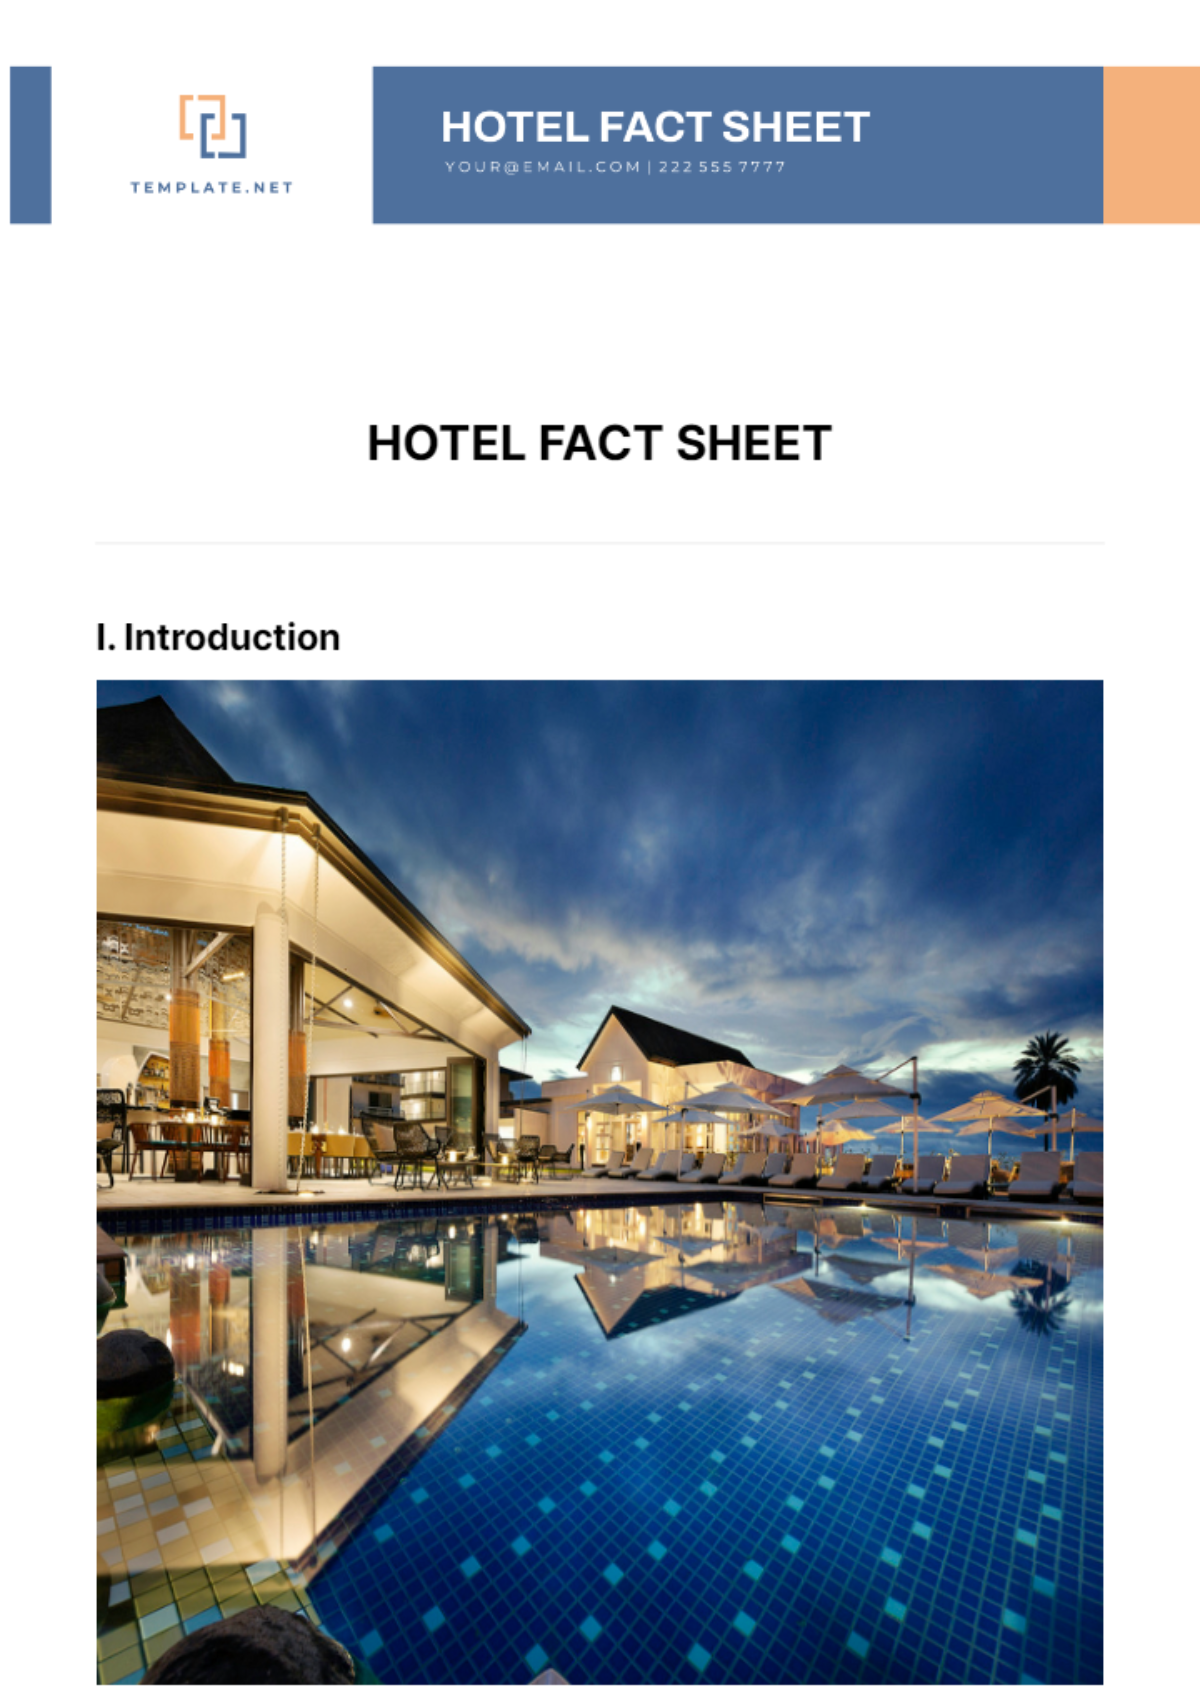 Hotel Fact Sheet Template